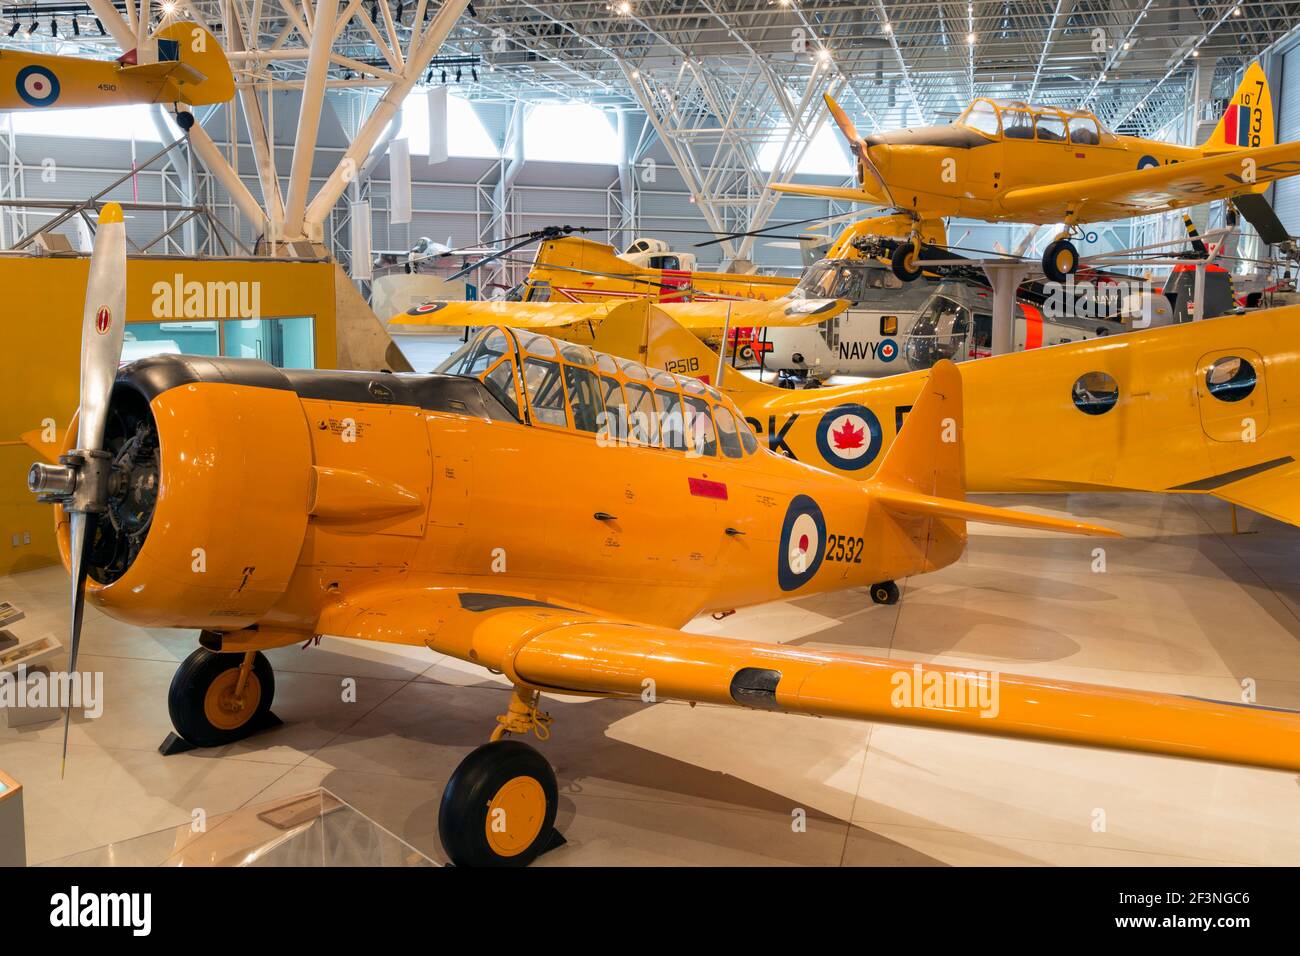 Canada, Ontario, Ottawa, Musée canadien de l'aviation et de l'espace, avions de chasse exposés Banque D'Images